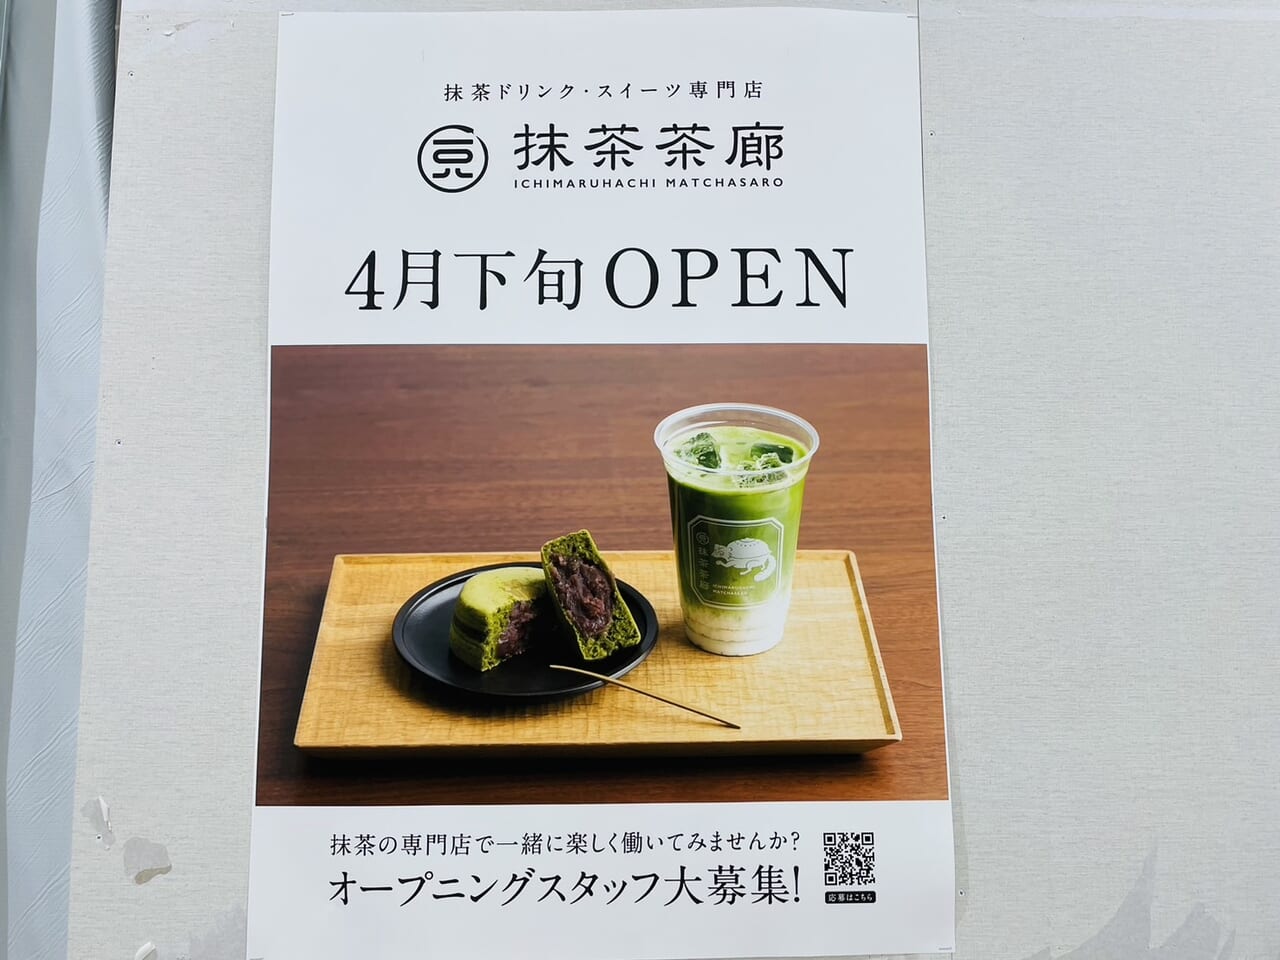 一〇八抹茶茶廊オープンのポスター